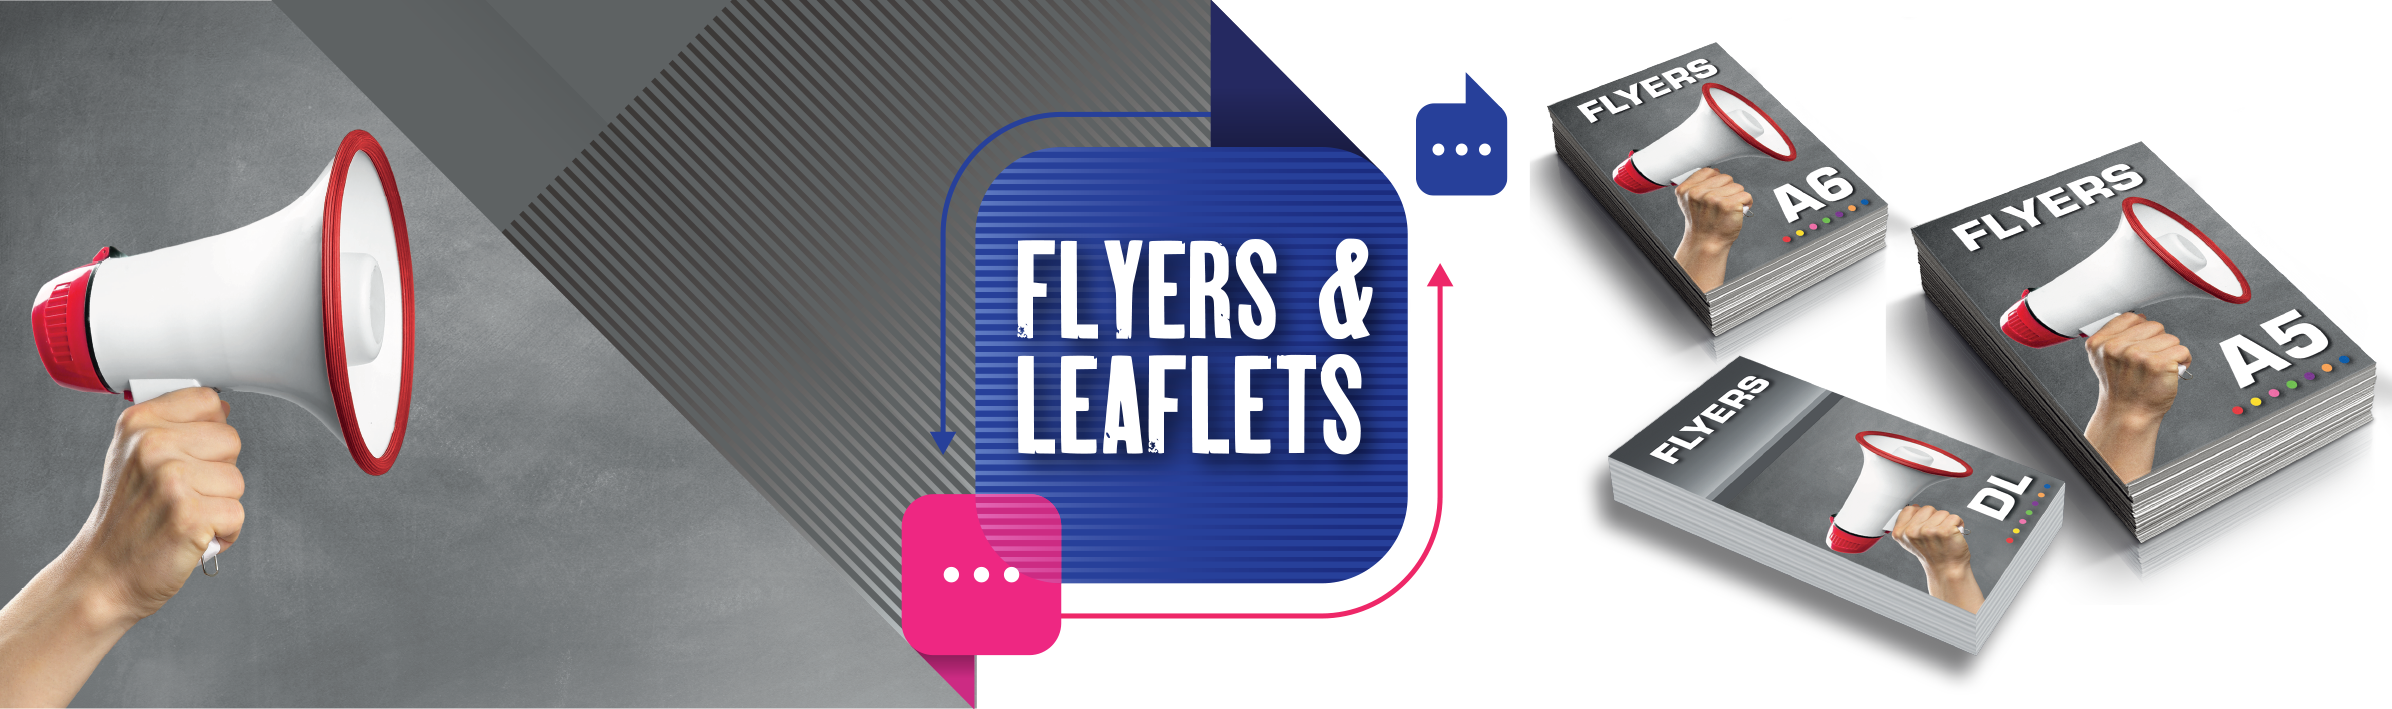 Flyers & Leaflets Product Slider 2021